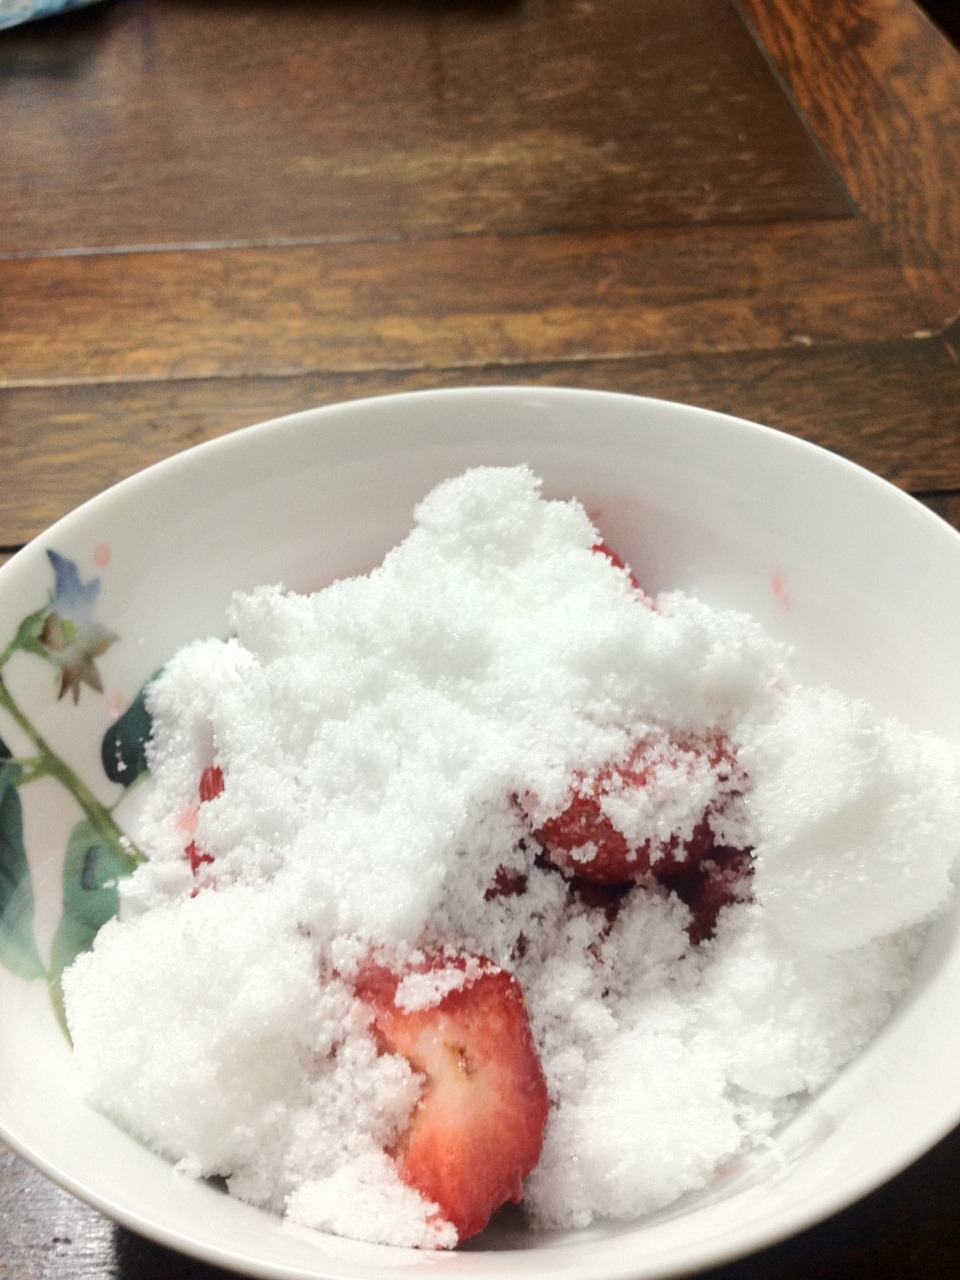 オカンがどれだけ砂糖を入れるか証明して見せた画像。
まるでかき氷のように、イチゴに砂糖を投下。
http://wtbw2010.blogspot.jp/2014/03/blog-post.html